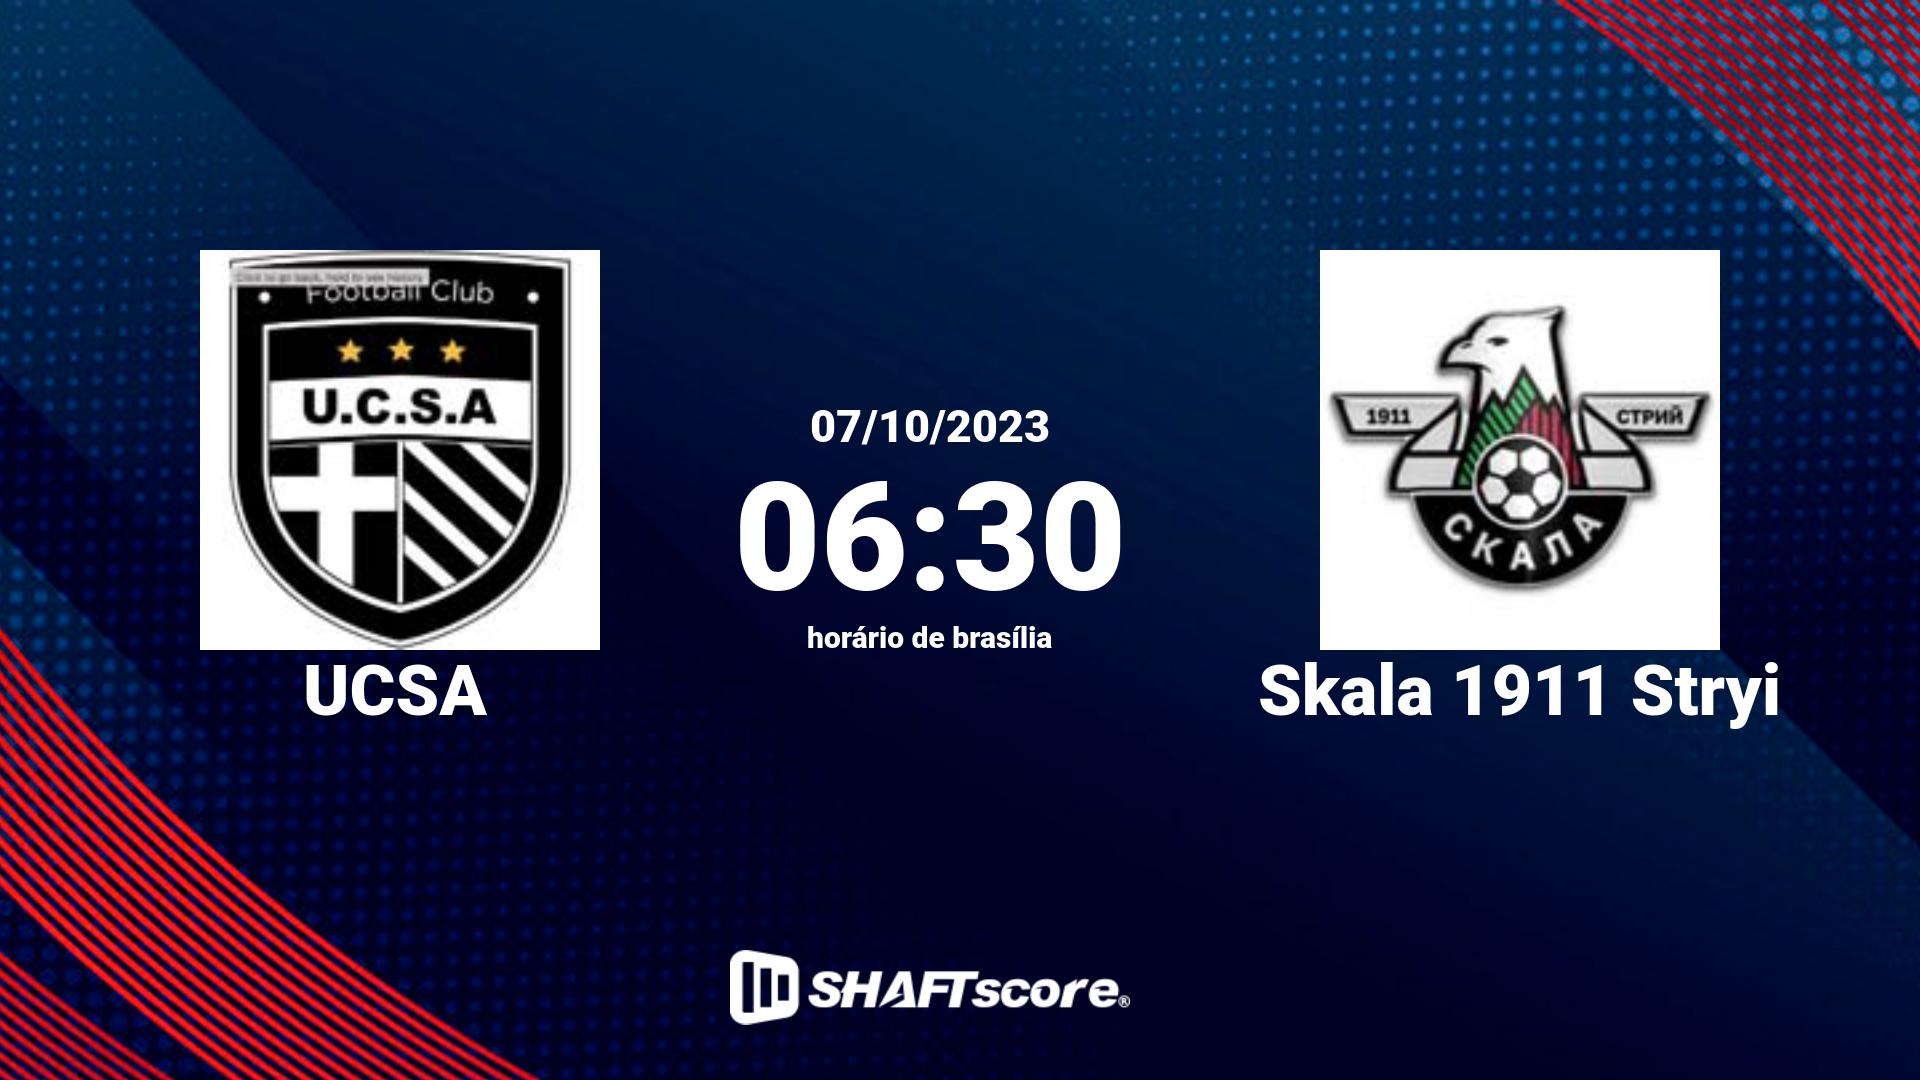 Estatísticas do jogo UCSA vs Skala 1911 Stryi 07.10 06:30